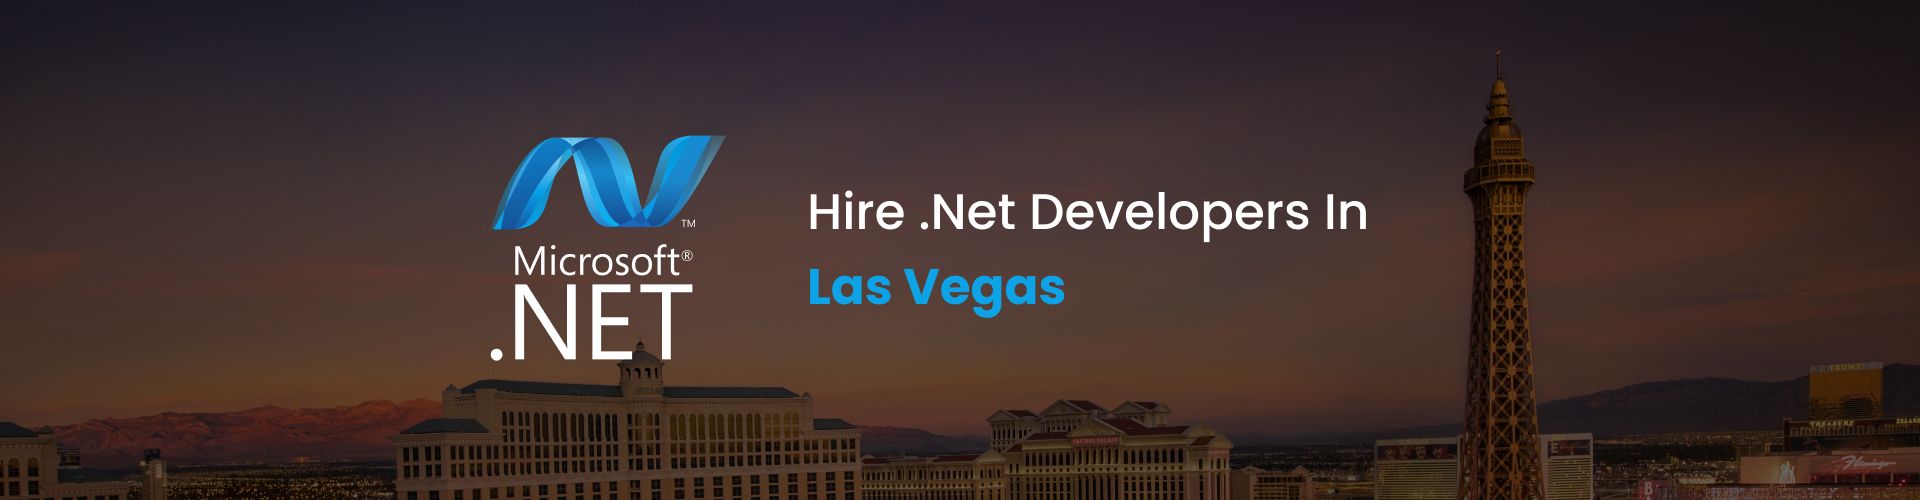 hire .net developers in las vegas